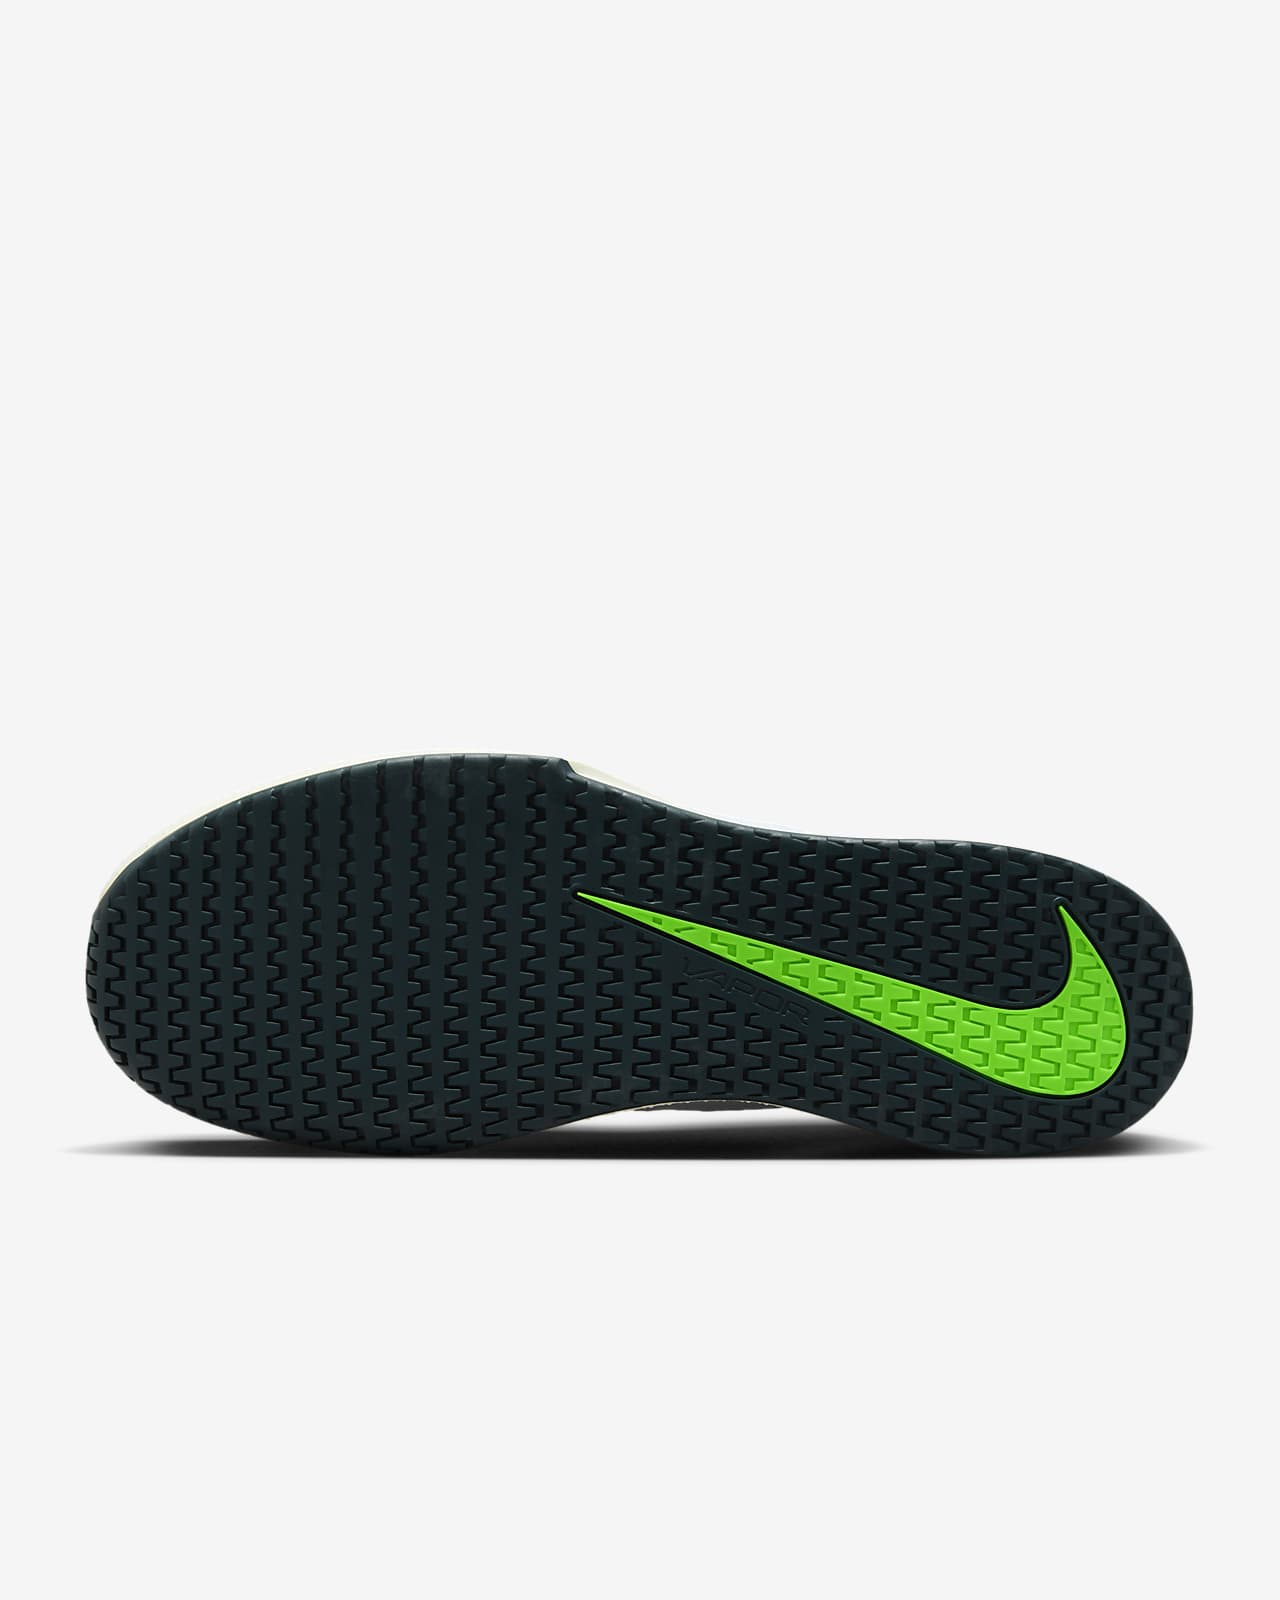 Calzado de tenis cancha dura para hombre NikeCourt Lite 2. Nike.com